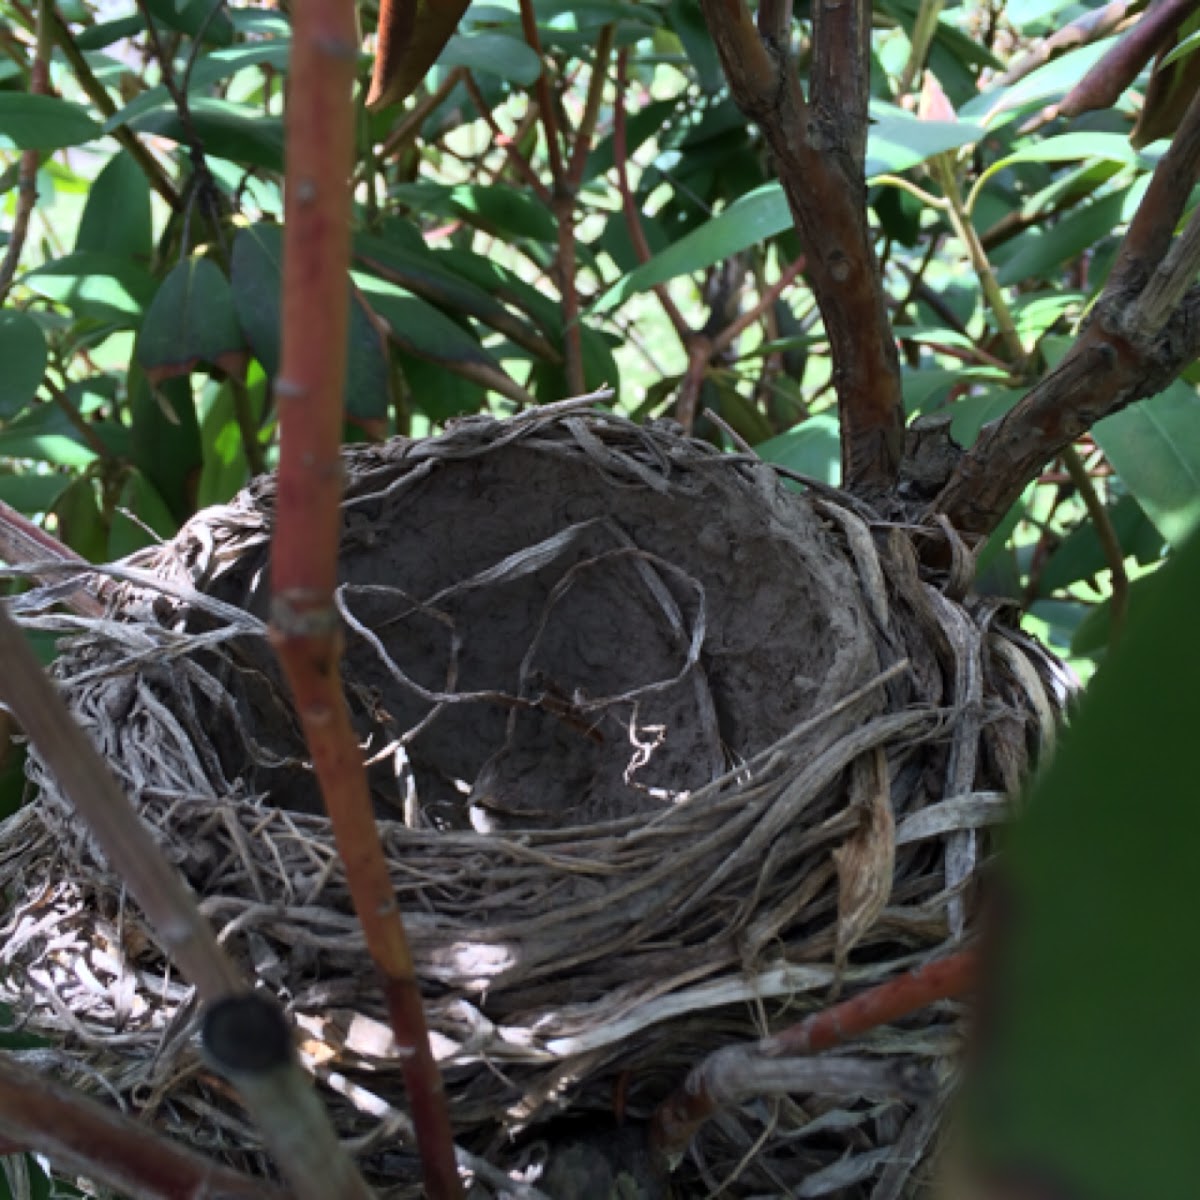 Robin's nest